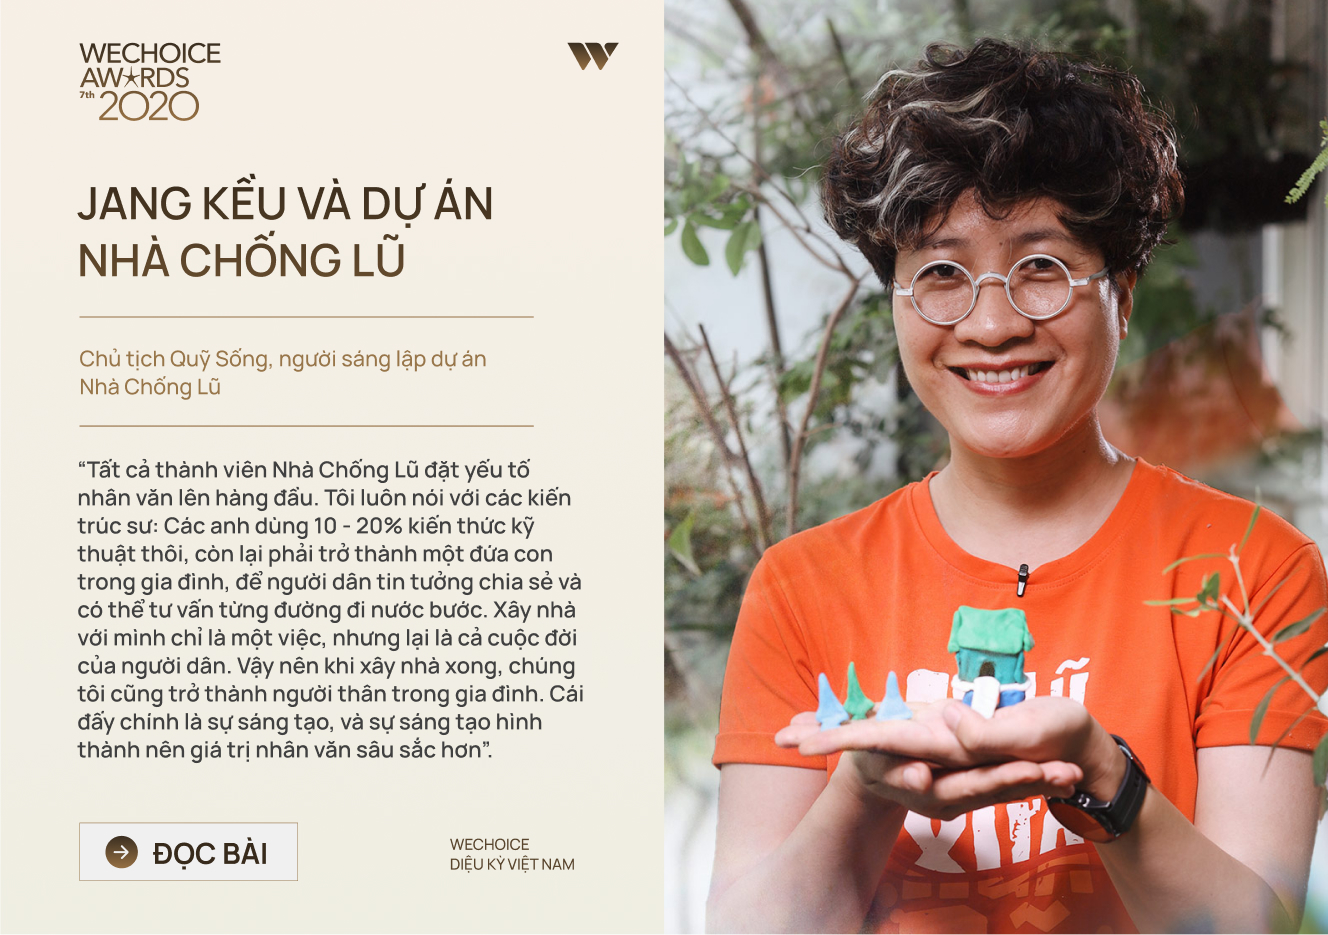 20 đề cử nhân vật truyền cảm hứng của WeChoice Awards 2020: Những câu chuyện tạo nên Diệu kỳ Việt Nam - Ảnh 13.